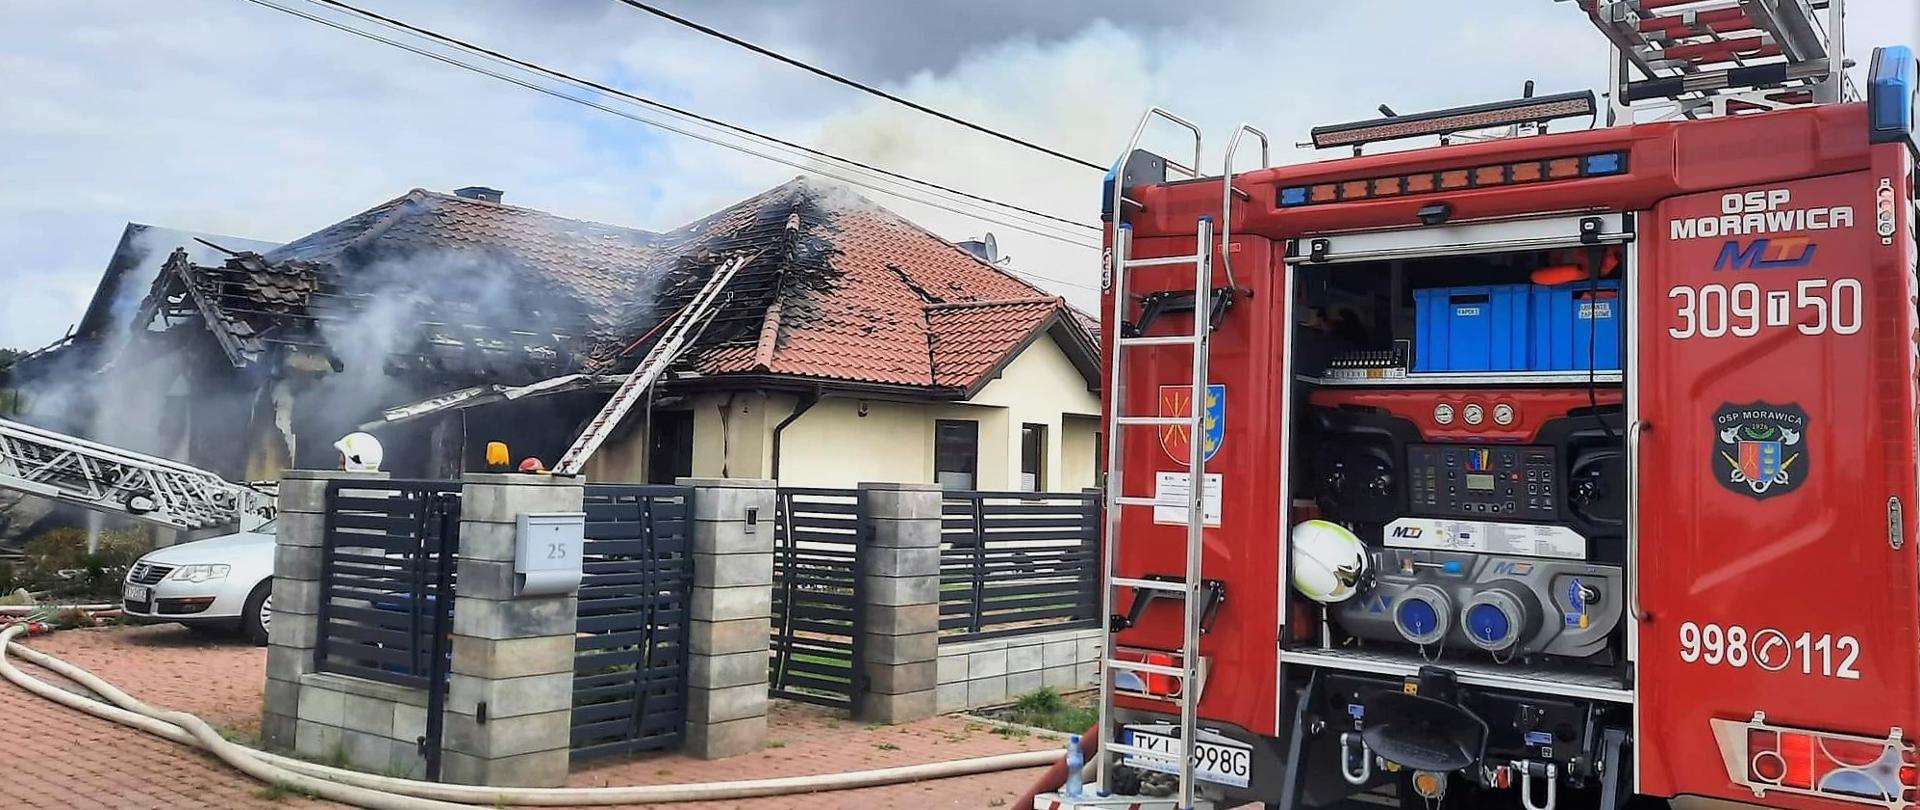 Zdjęcie przedstawia spalony budynek mieszkalny a z prawej strony widać fragment wozu pożarniczego.